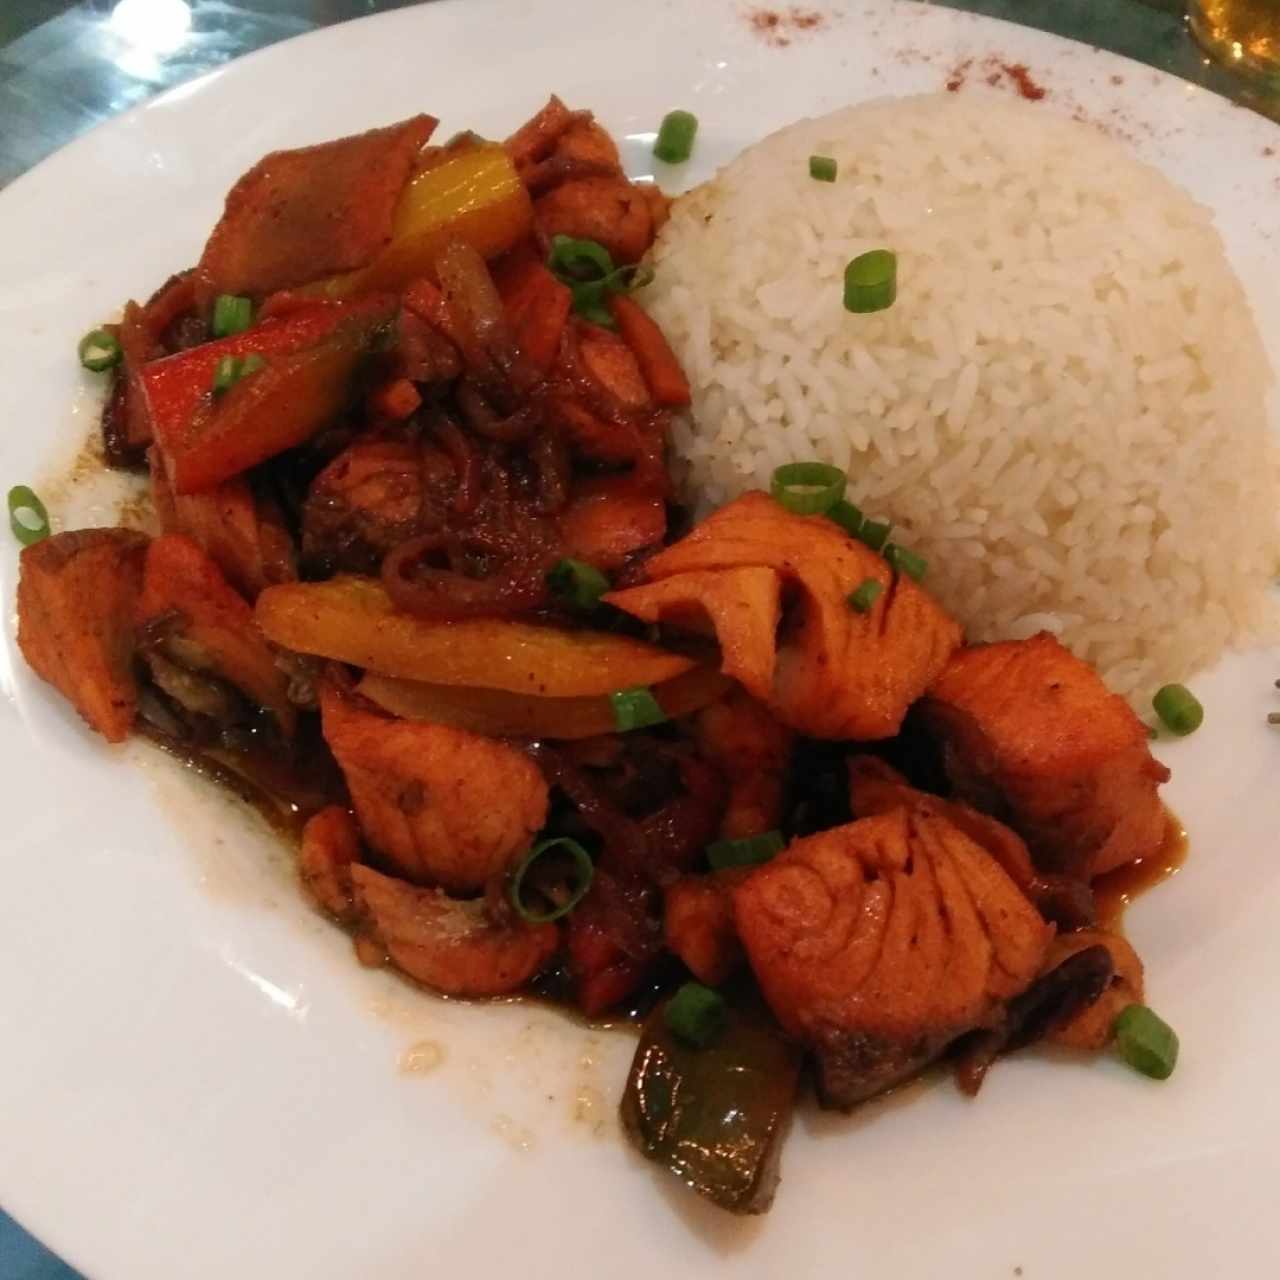 Salmón con vegetales salteados al wok y arroz blanco.